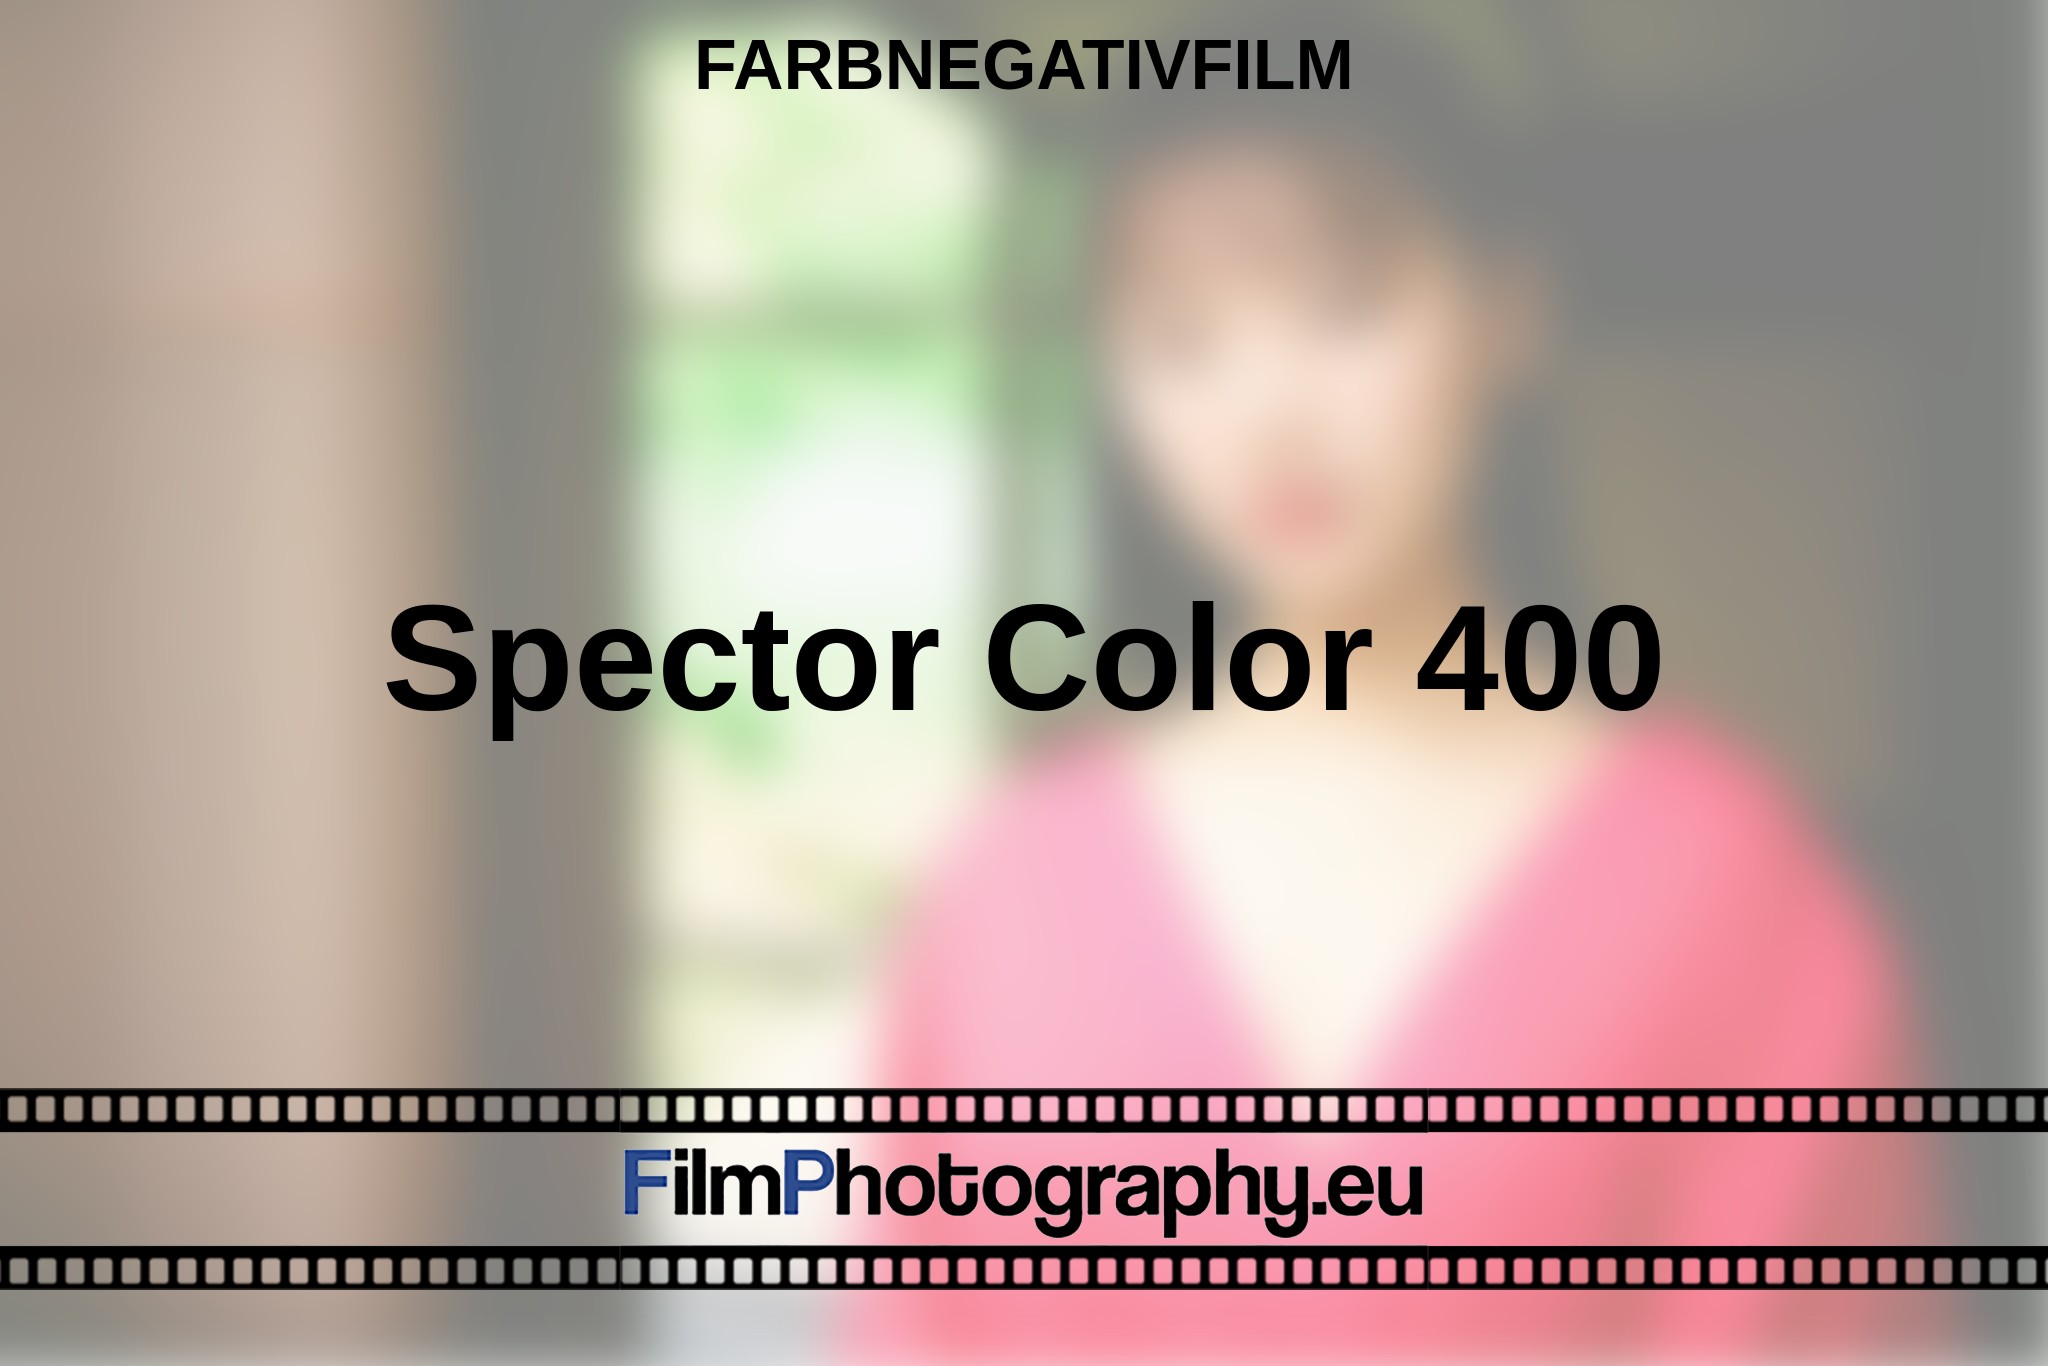 spector-color-400-farbnegativfilm-bnv.jpg